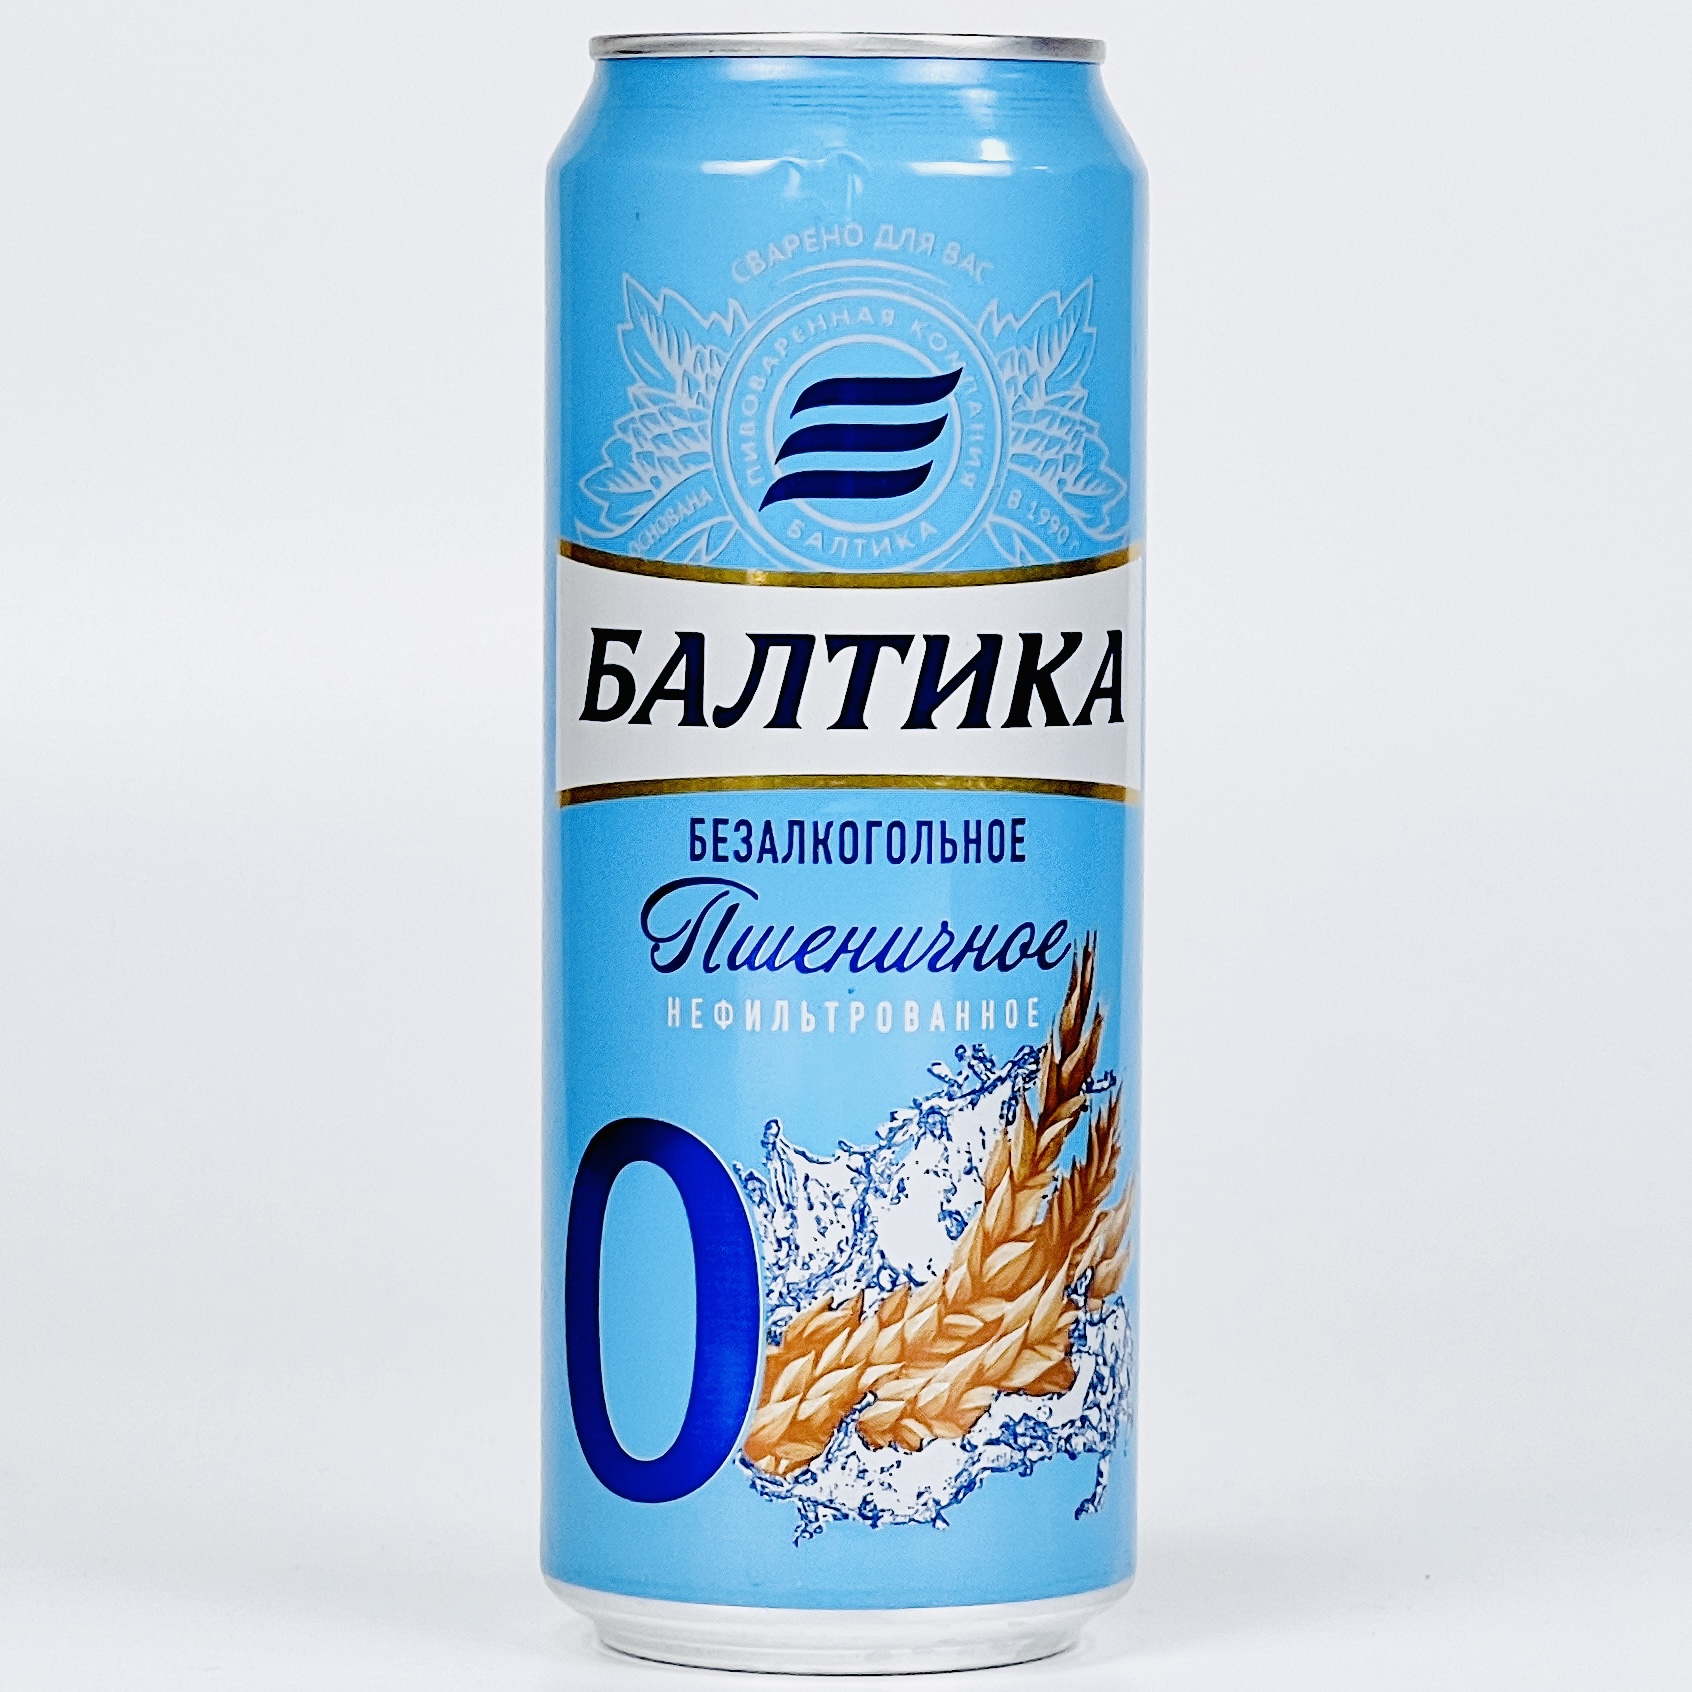 Пиво балтика пшеничное. Балтика пшеничное нефильтрованное. Балтика пшеничное безалкогольное. Балтика пшеничное нефильтрованное безалкогольное. Балтика 0 пшеничное нефильтрованное.